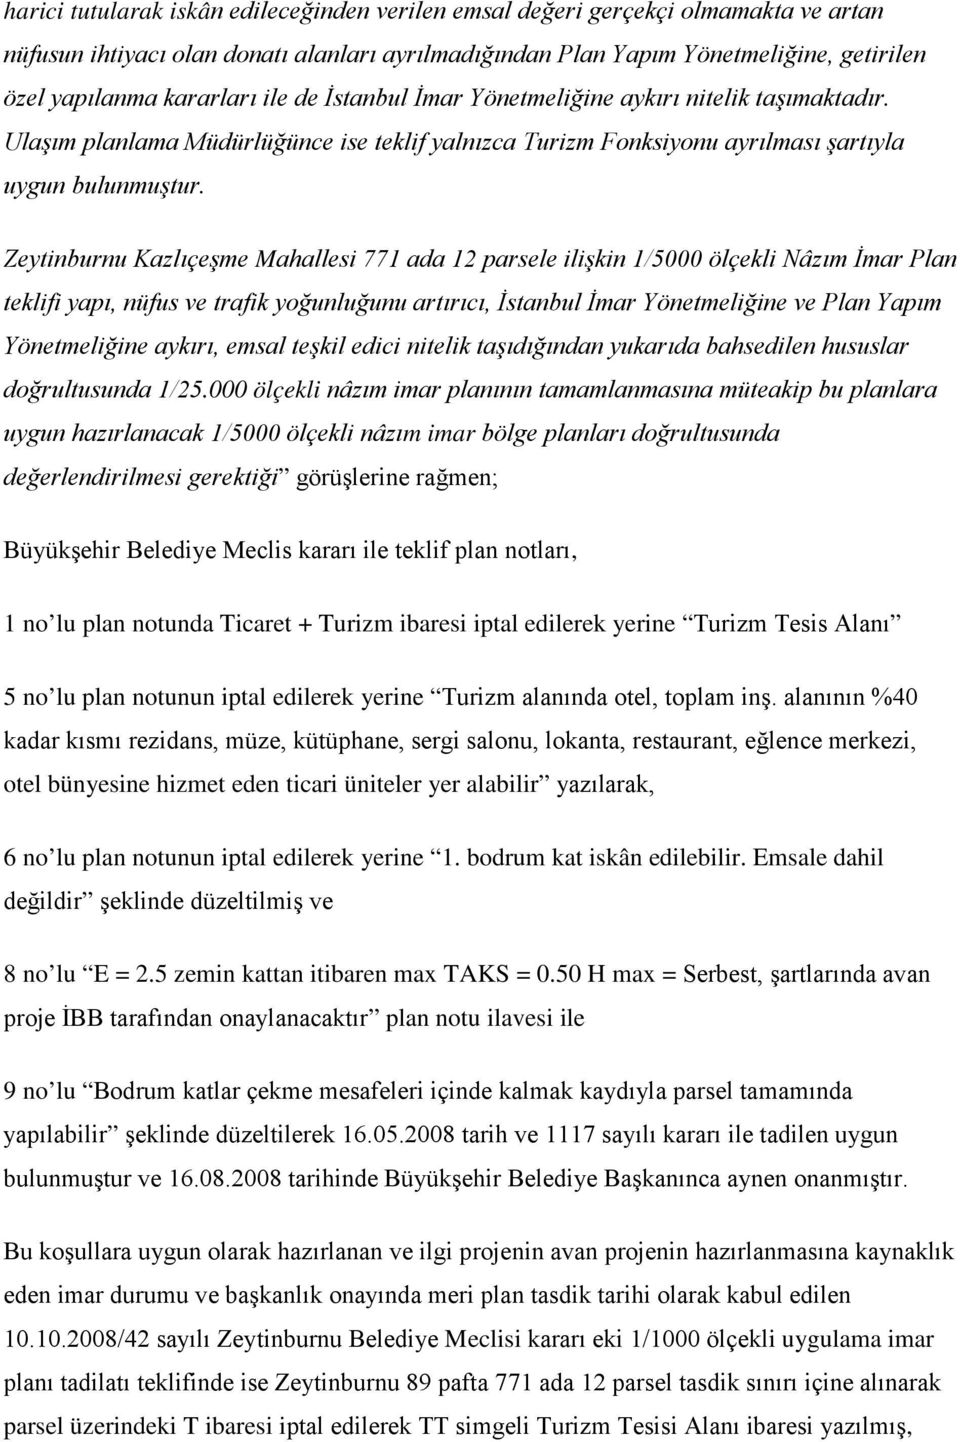 Zeytinburnu Kazlıçeşme Mahallesi 771 ada 12 parsele ilişkin 1/5000 ölçekli Nâzım İmar Plan teklifi yapı, nüfus ve trafik yoğunluğunu artırıcı, İstanbul İmar Yönetmeliğine ve Plan Yapım Yönetmeliğine